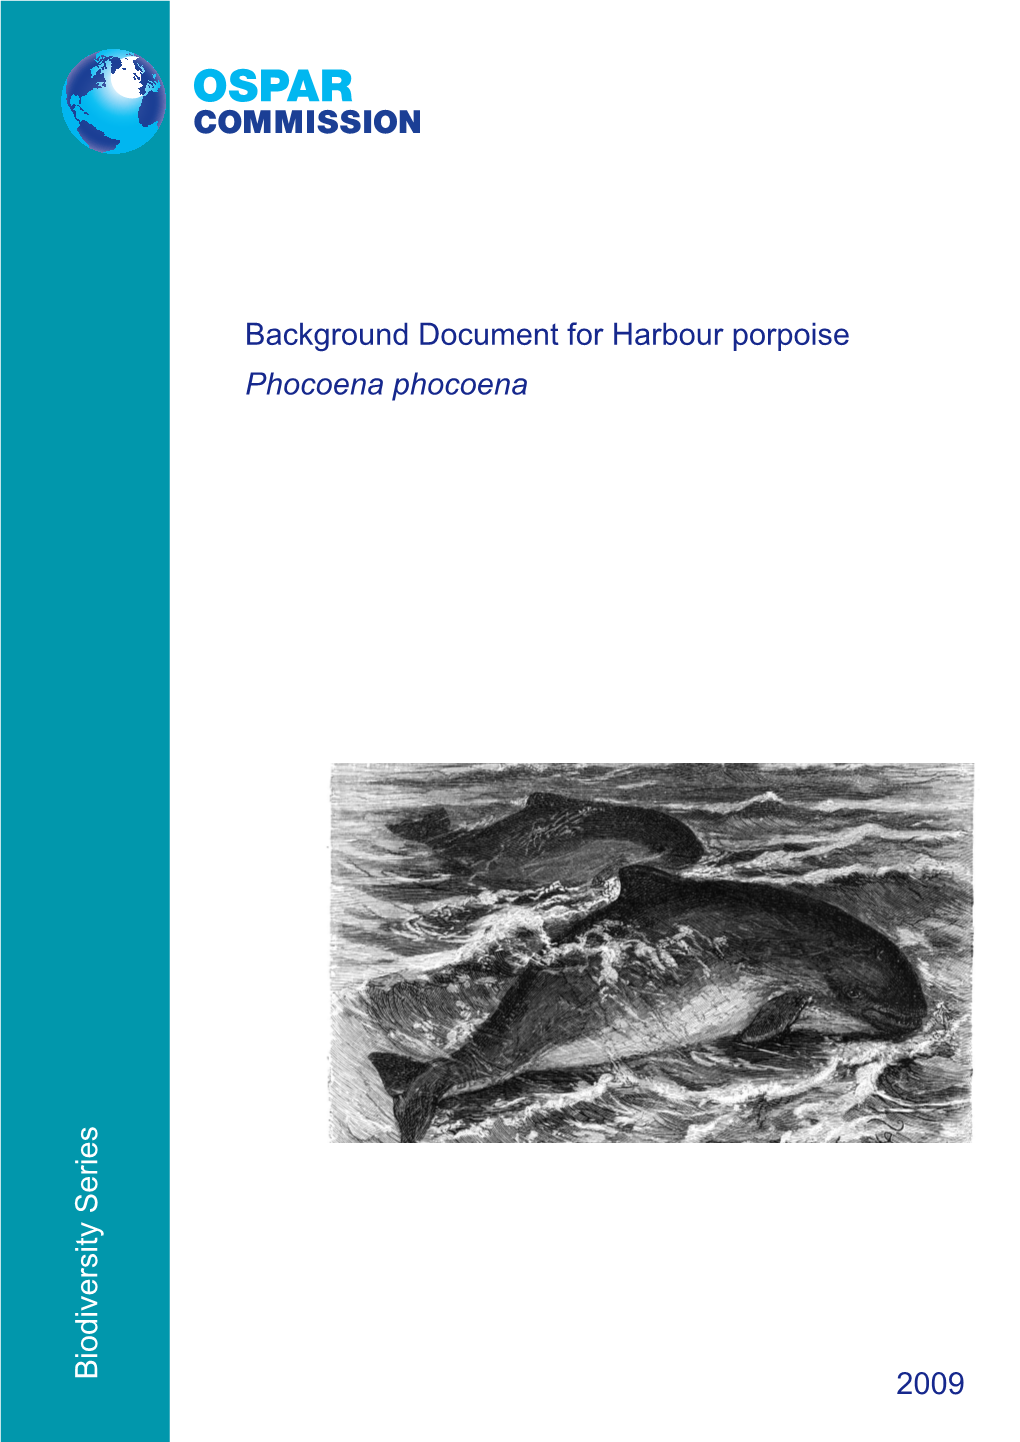 Biodiversity Series Background Document for Harbour Porpoise Phocoena Phocoena 2009